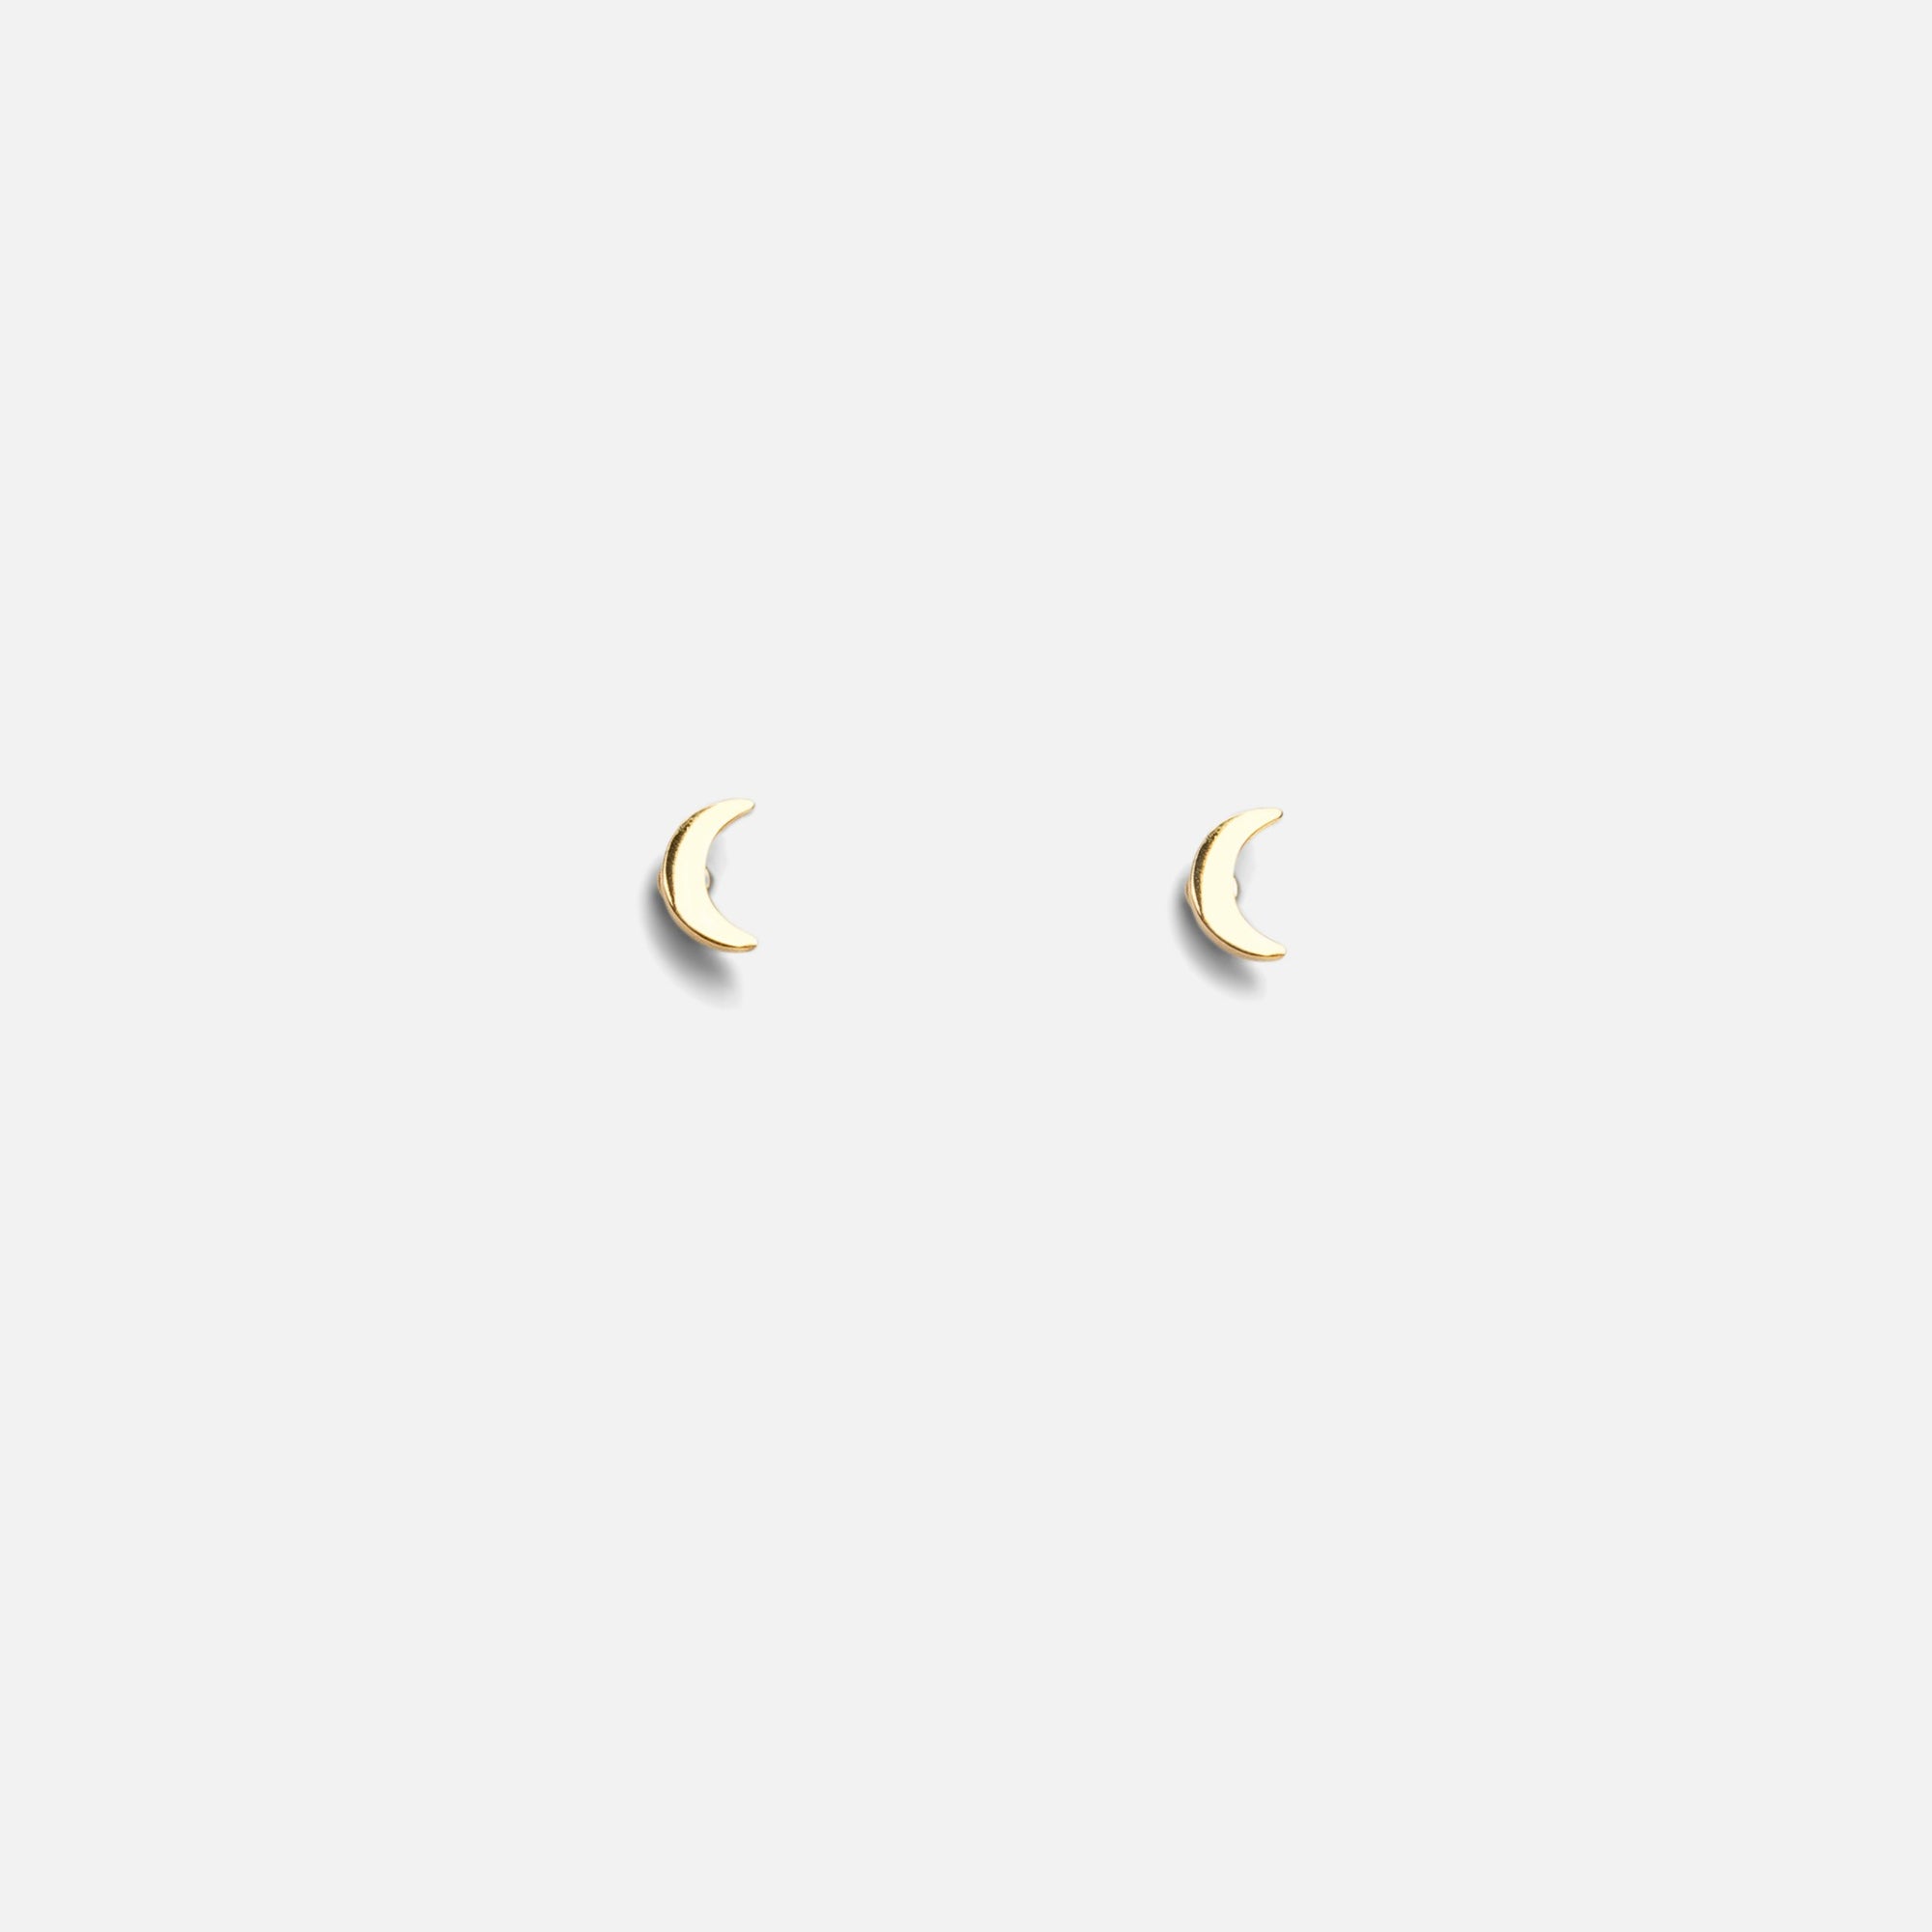 Mini golden moon earrings in stainless steel